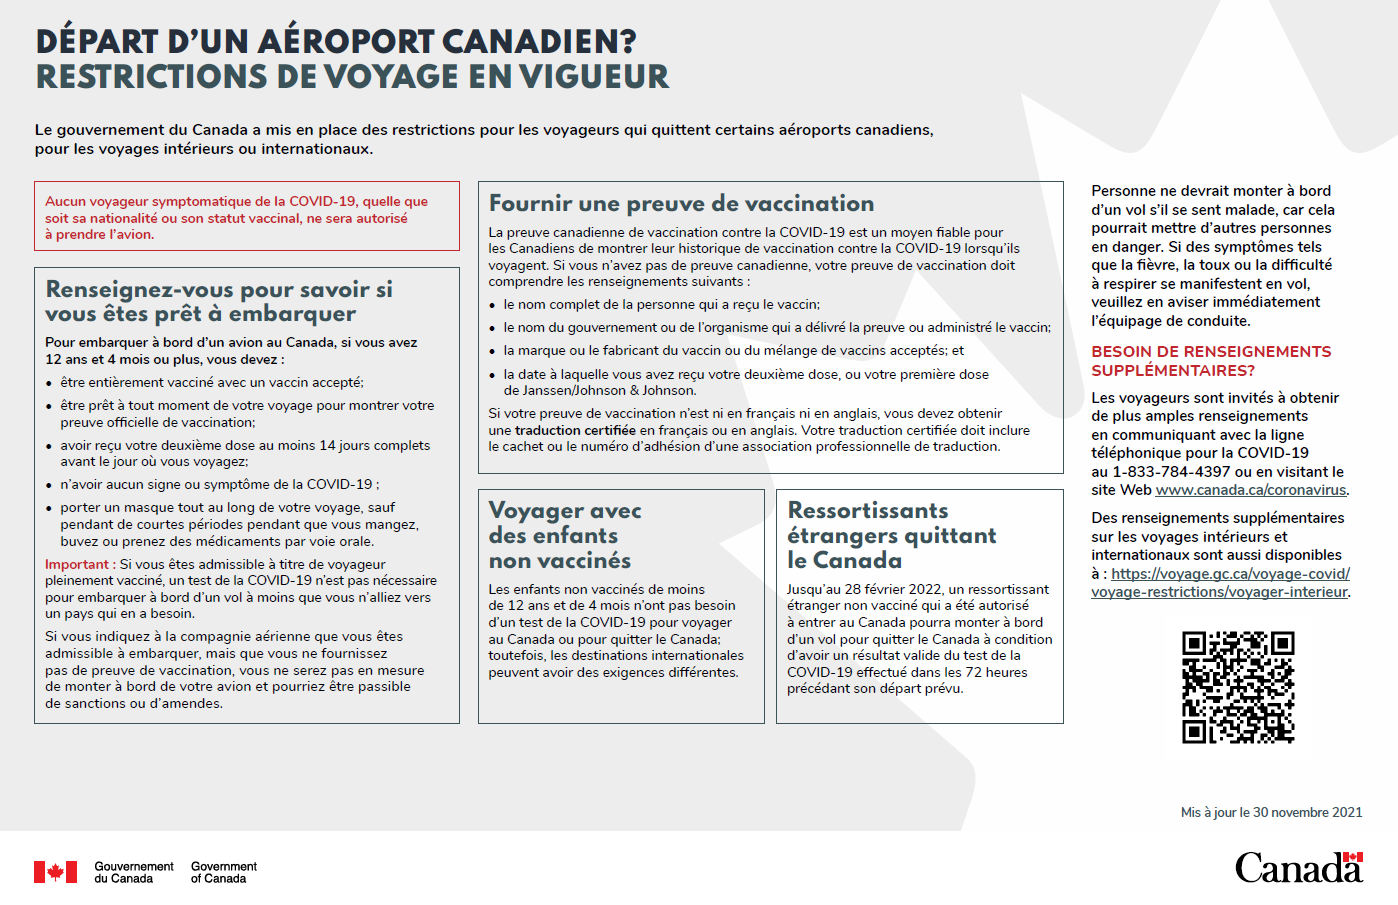 Affiche - Départ d’un aéroport canadien? Restrictions de voyage en vigueur